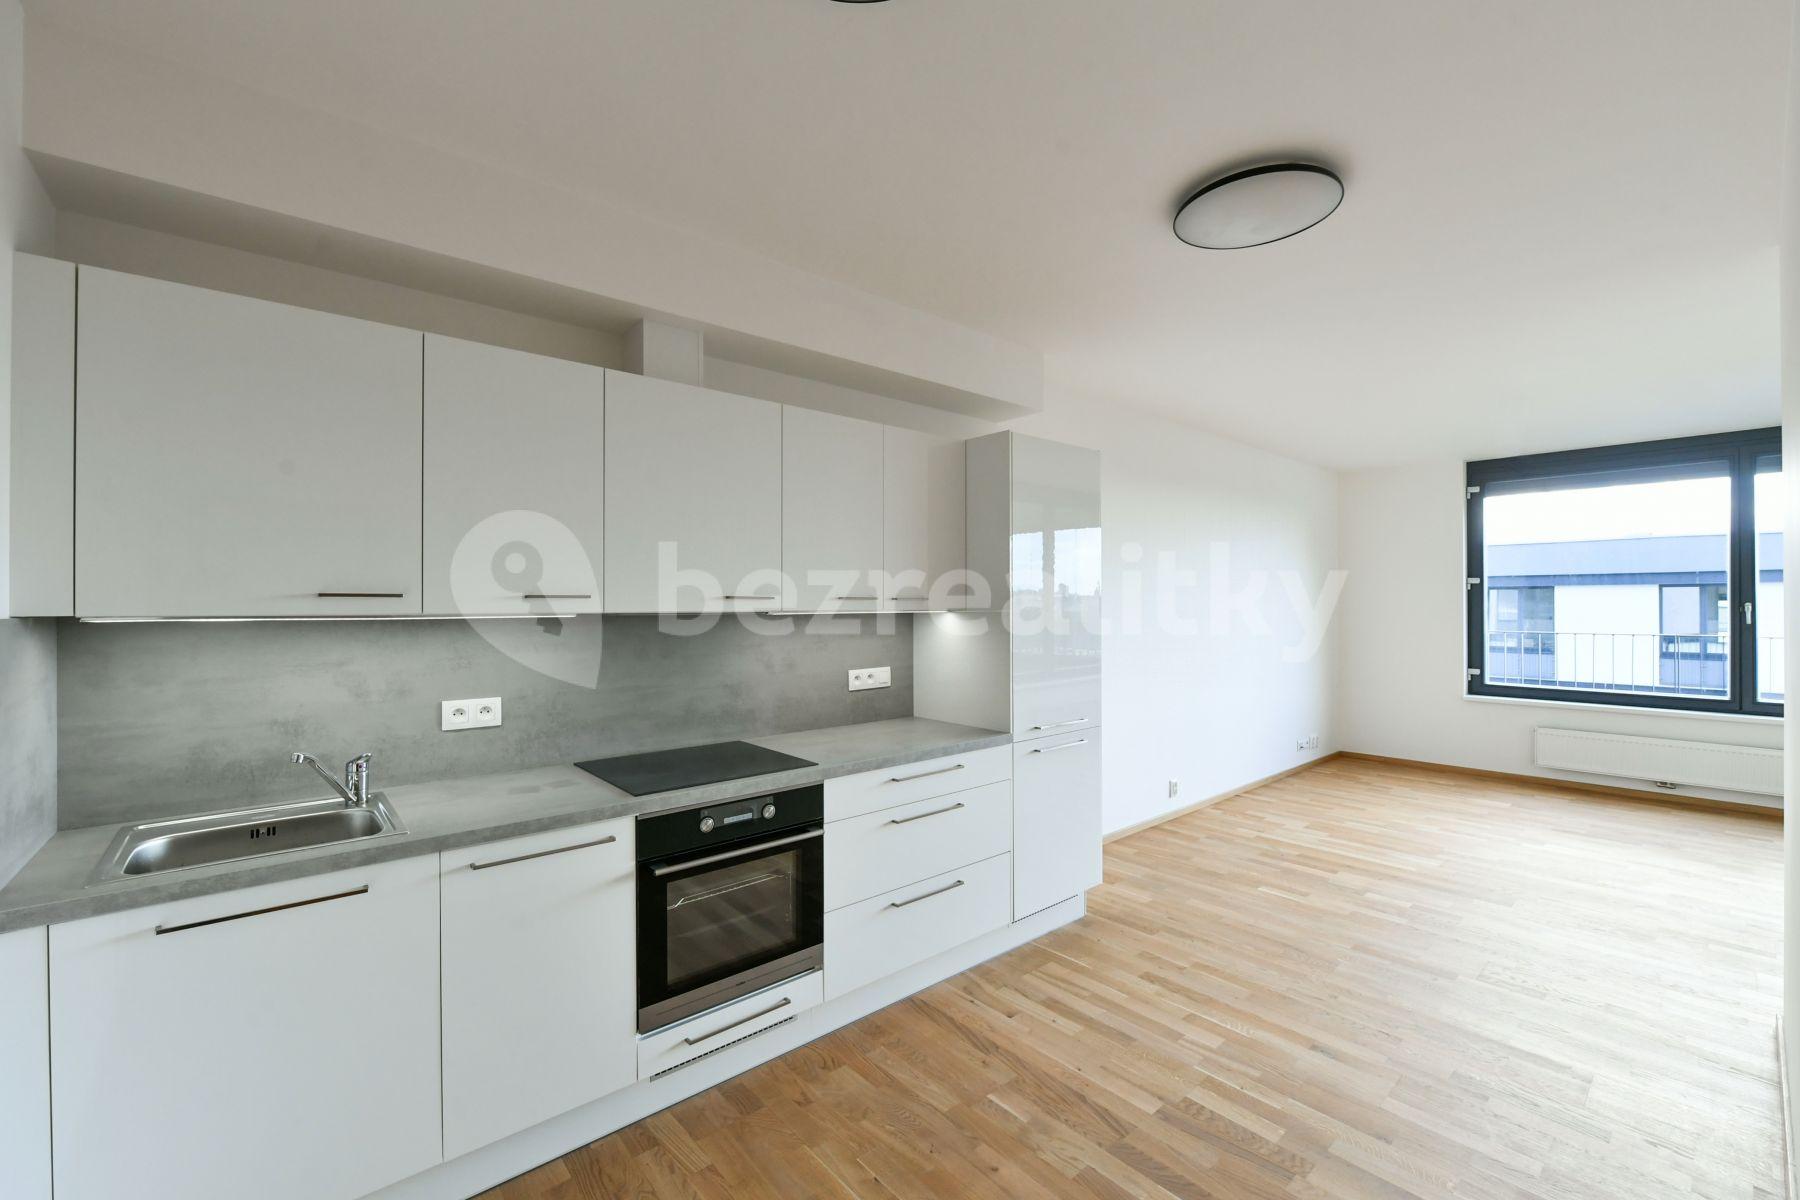 1 bedroom with open-plan kitchen flat to rent, 50 m², Střížkovská, Prague, Prague